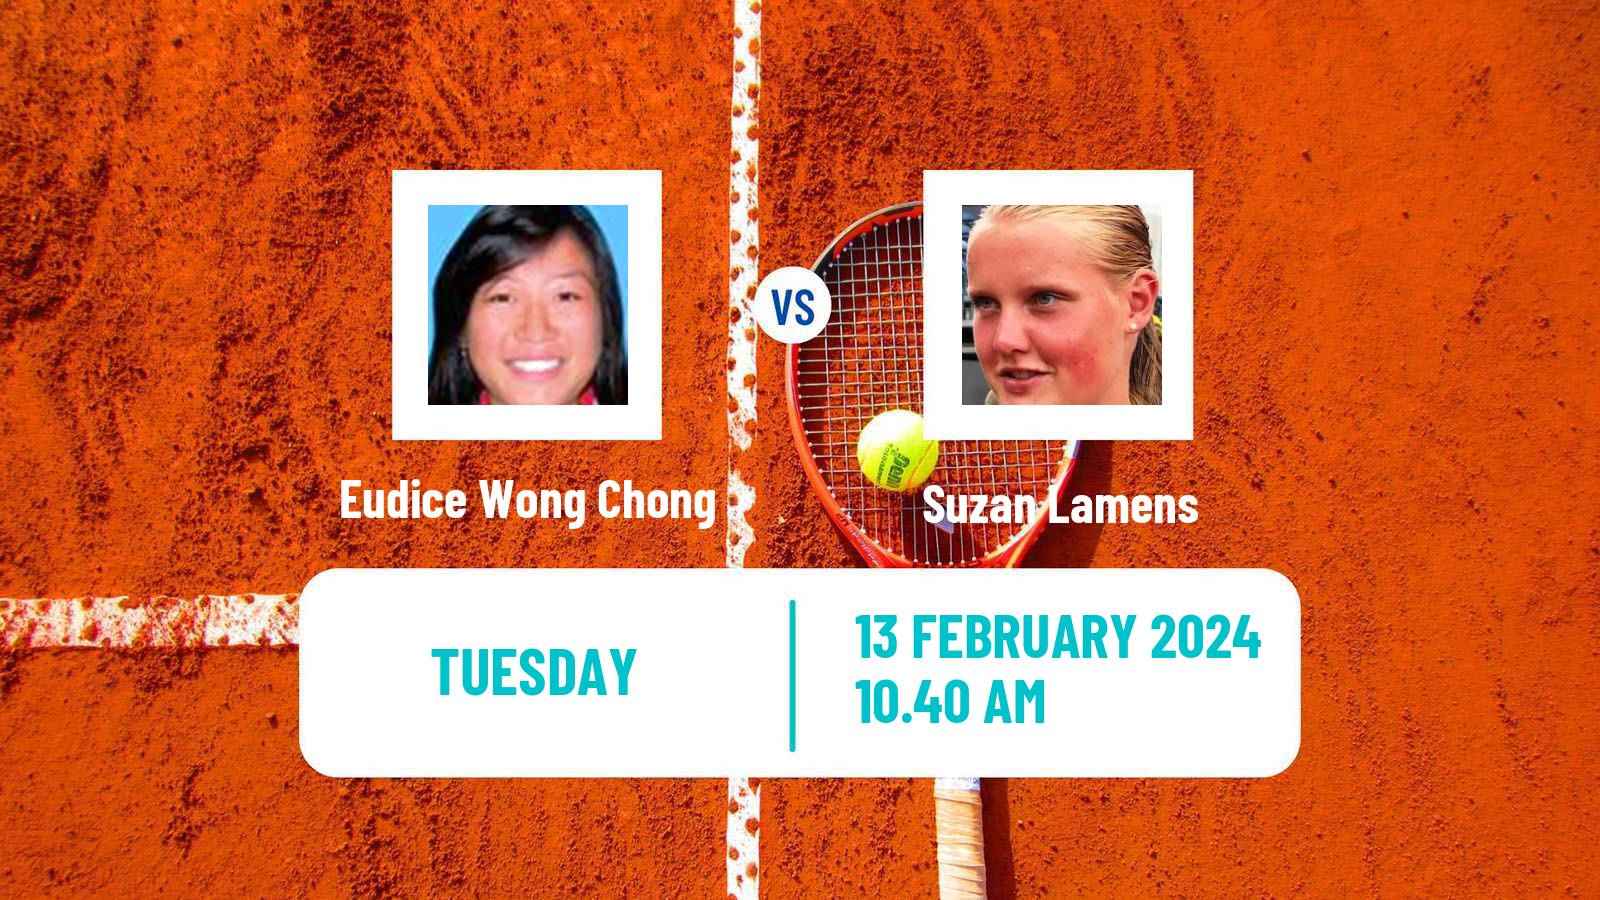 Tennis ITF W50 Roehampton Women Eudice Wong Chong - Suzan Lamens